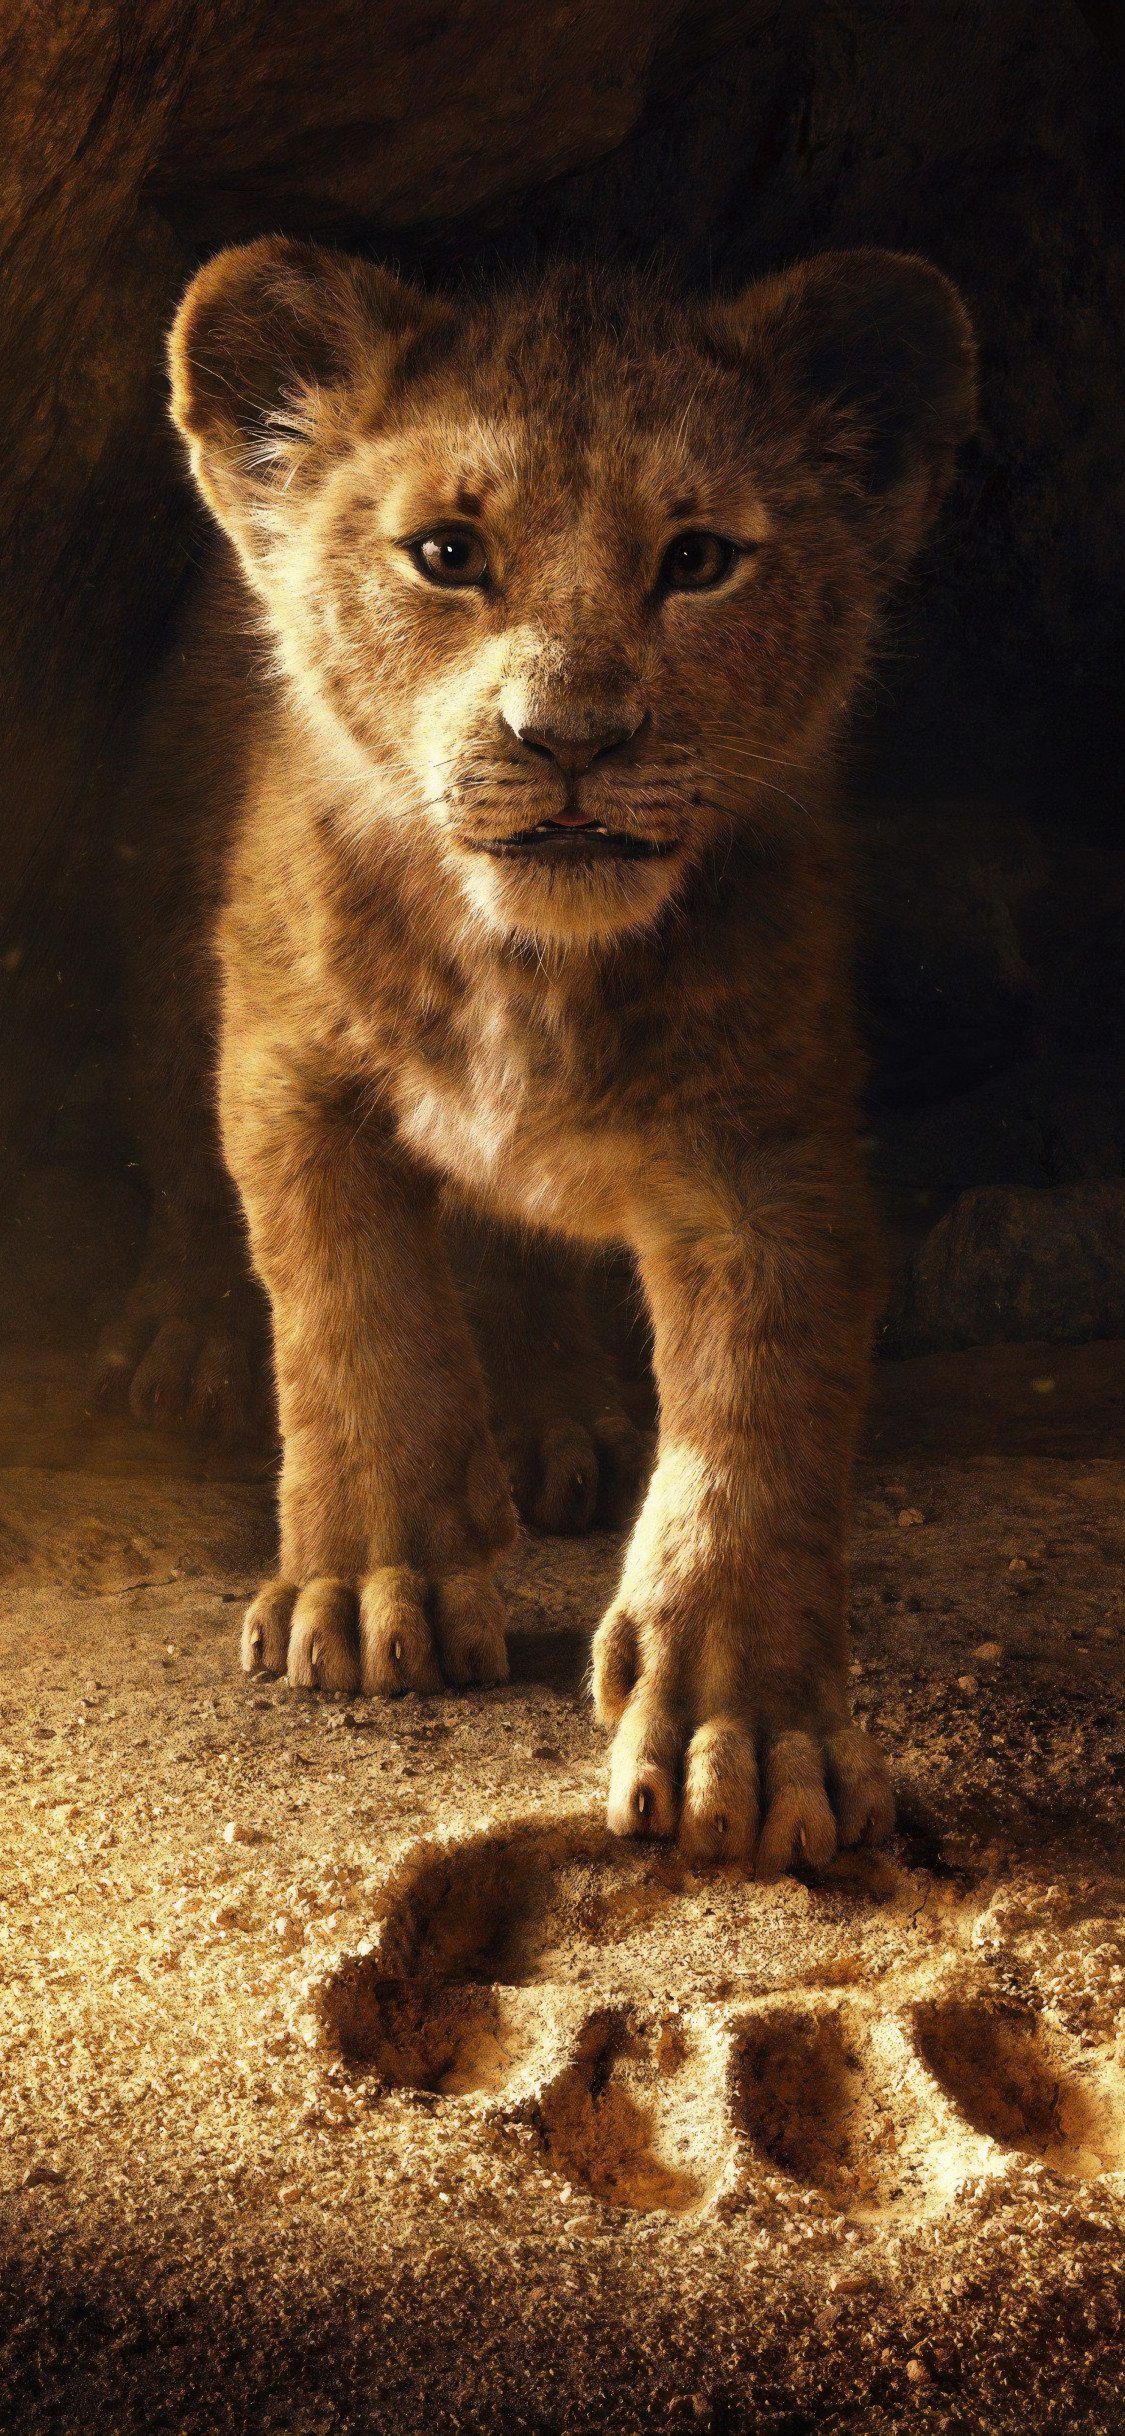 lion fond d'écran en direct,félidés,animal terrestre,faune,moustaches,lion